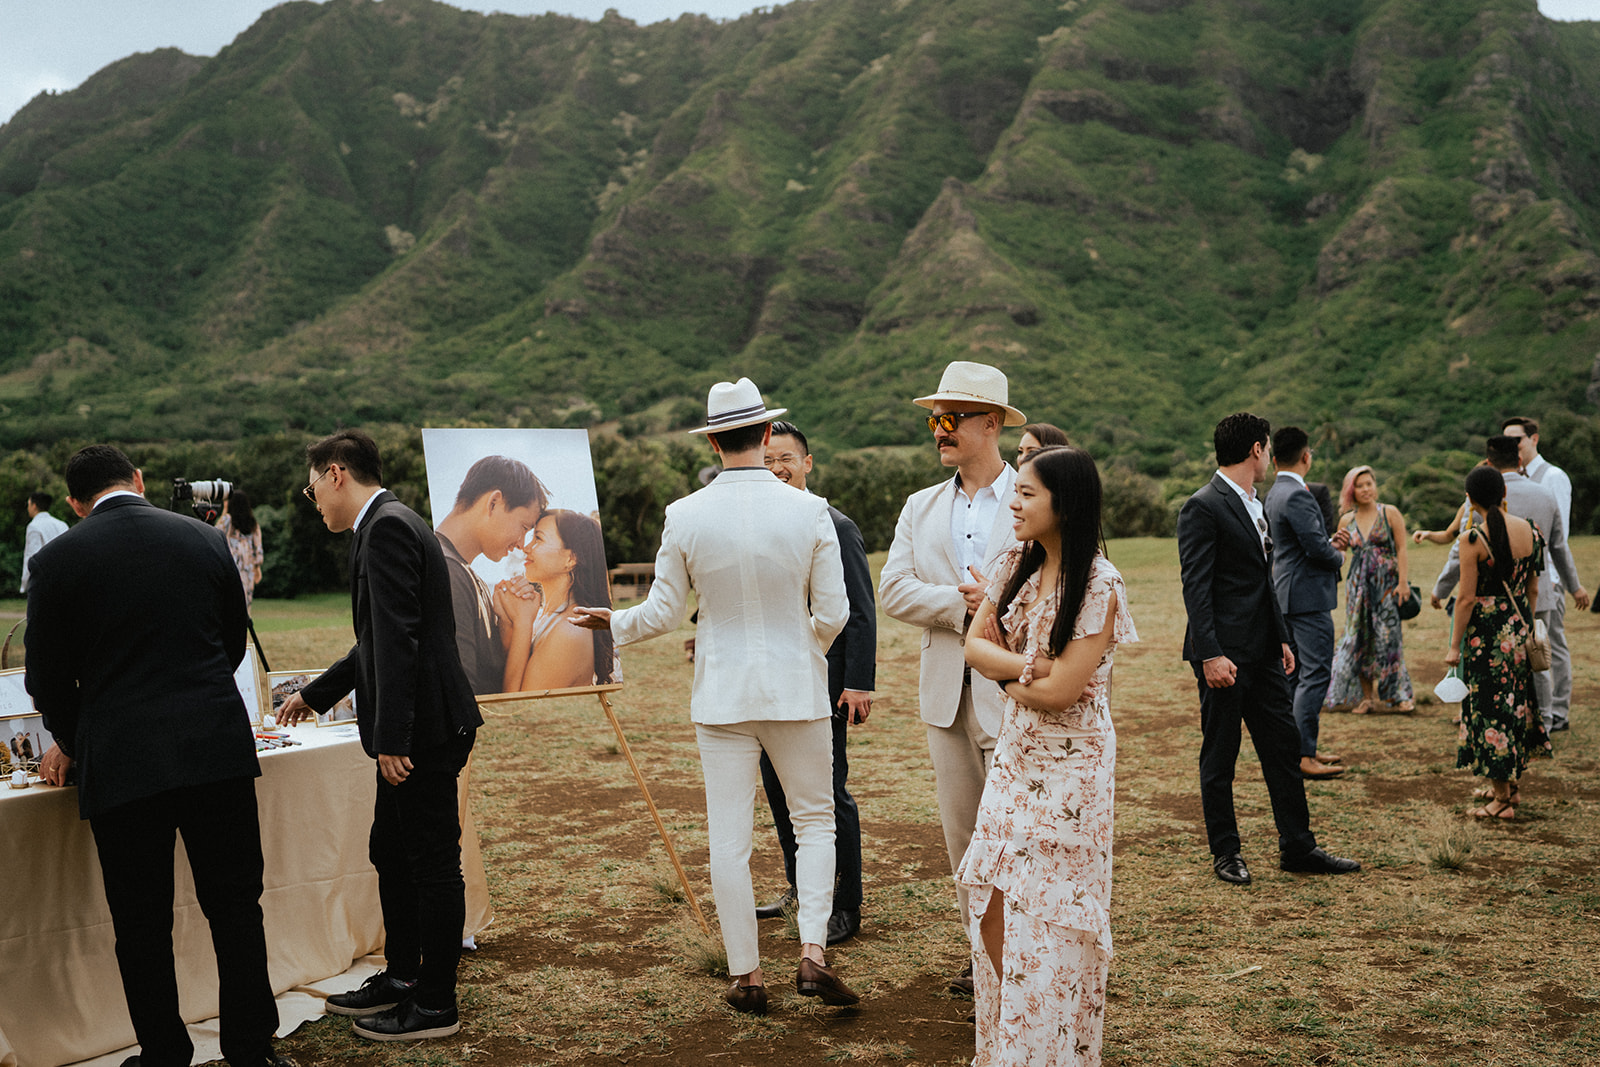 Wedding ceremony at Kualoa Ranch Hawaii